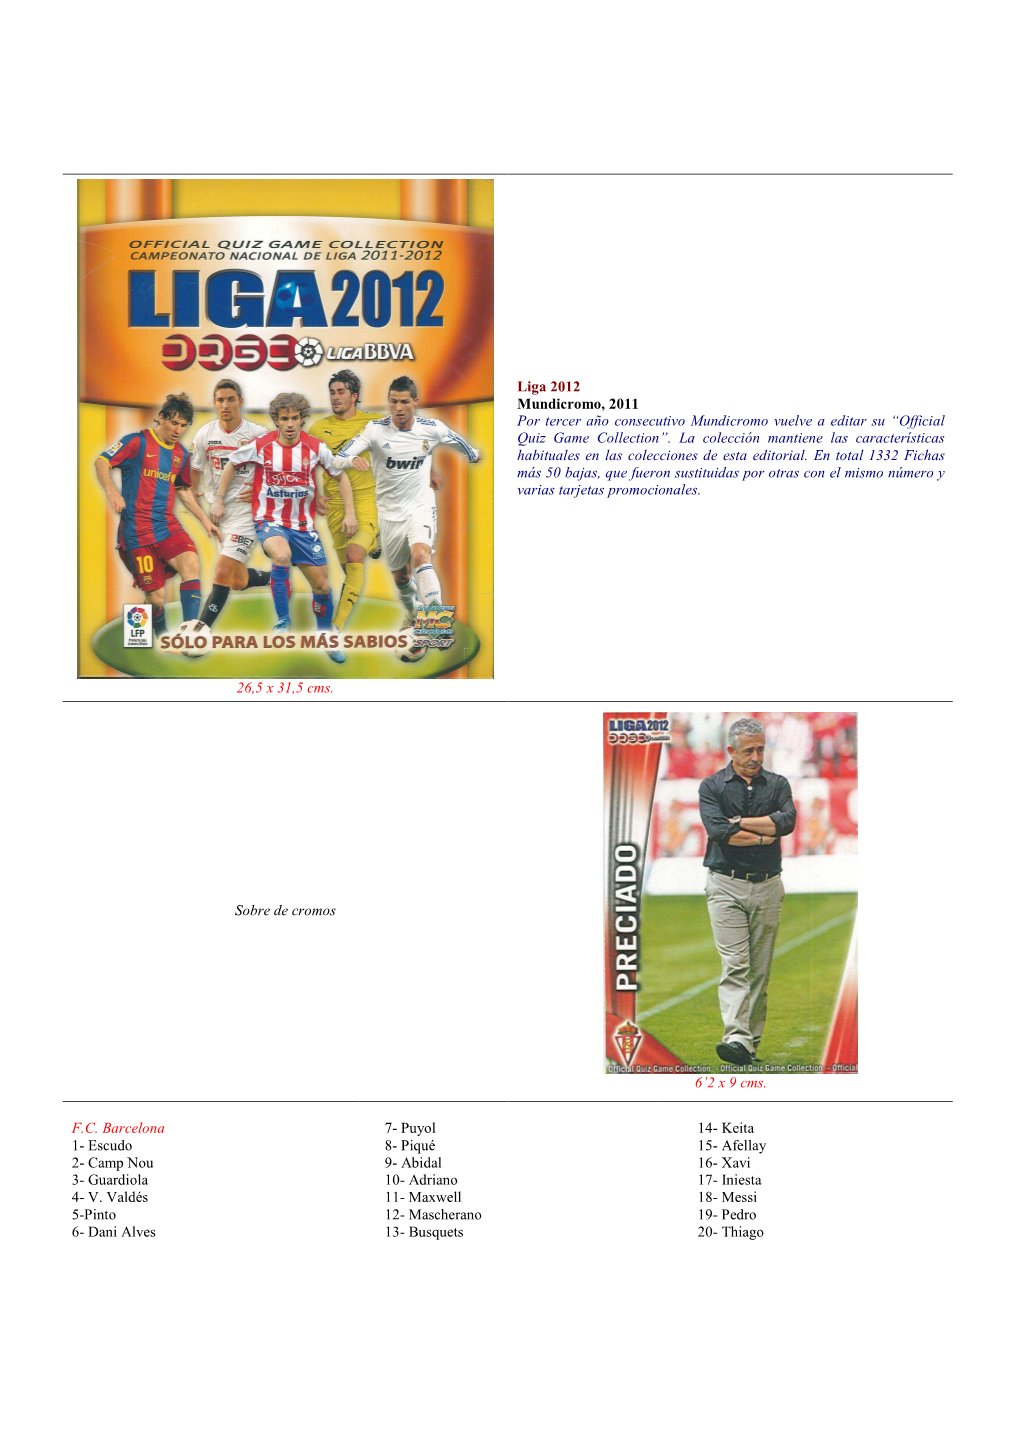 Liga 2012 OQGC